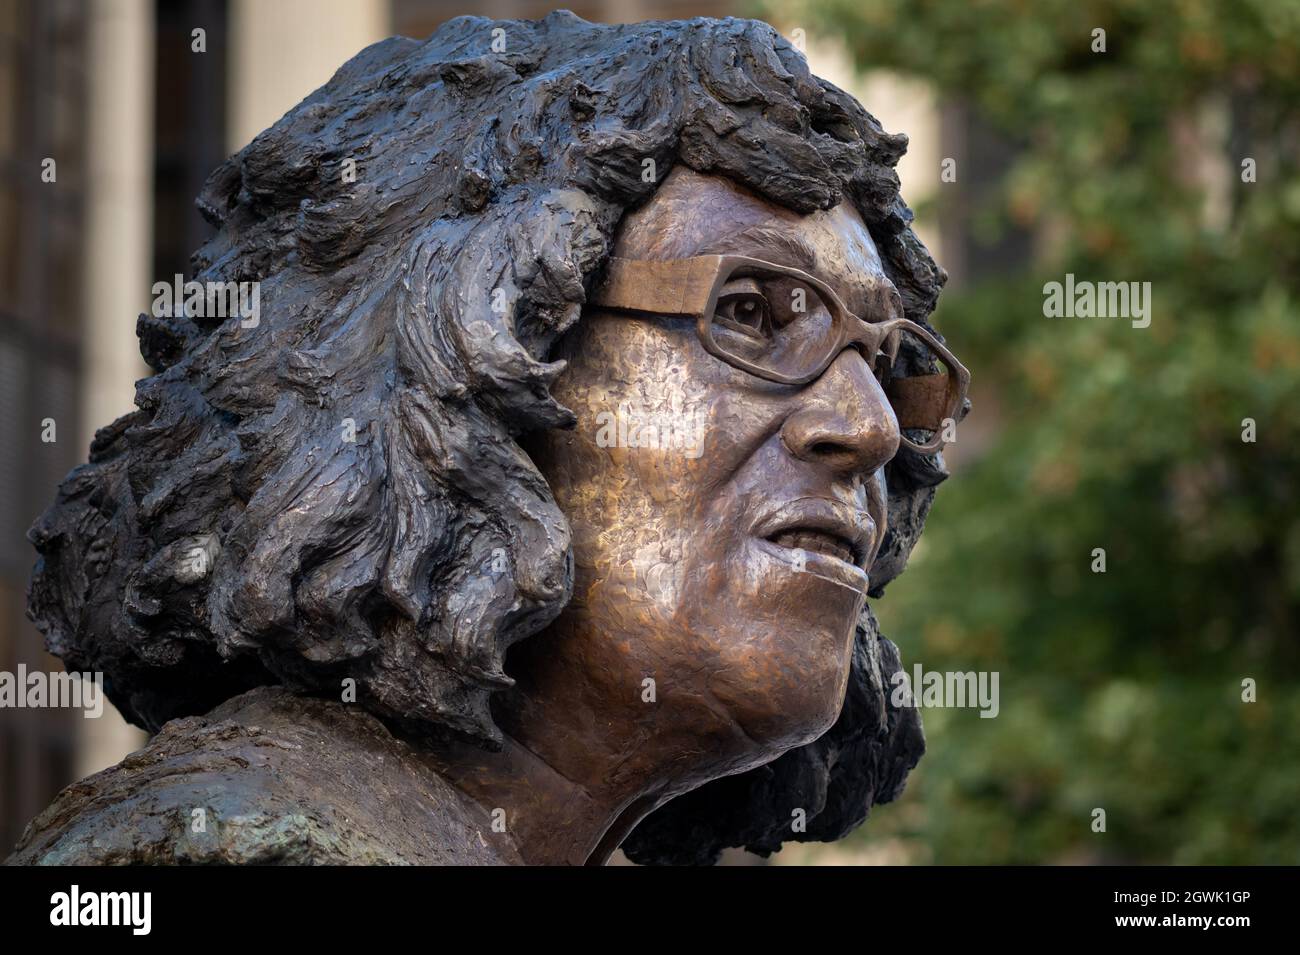 CARDIFF, PAYS DE GALLES - SEPTEMBRE 29 : statue de Betty Campbell sur Central Square le 29 septembre 2021 à Cardiff, pays de Galles. Betty Campbell, décédée en 2017 à l’âge de 82 ans, a été le premier chef d’école noir du pays de Galles. Banque D'Images